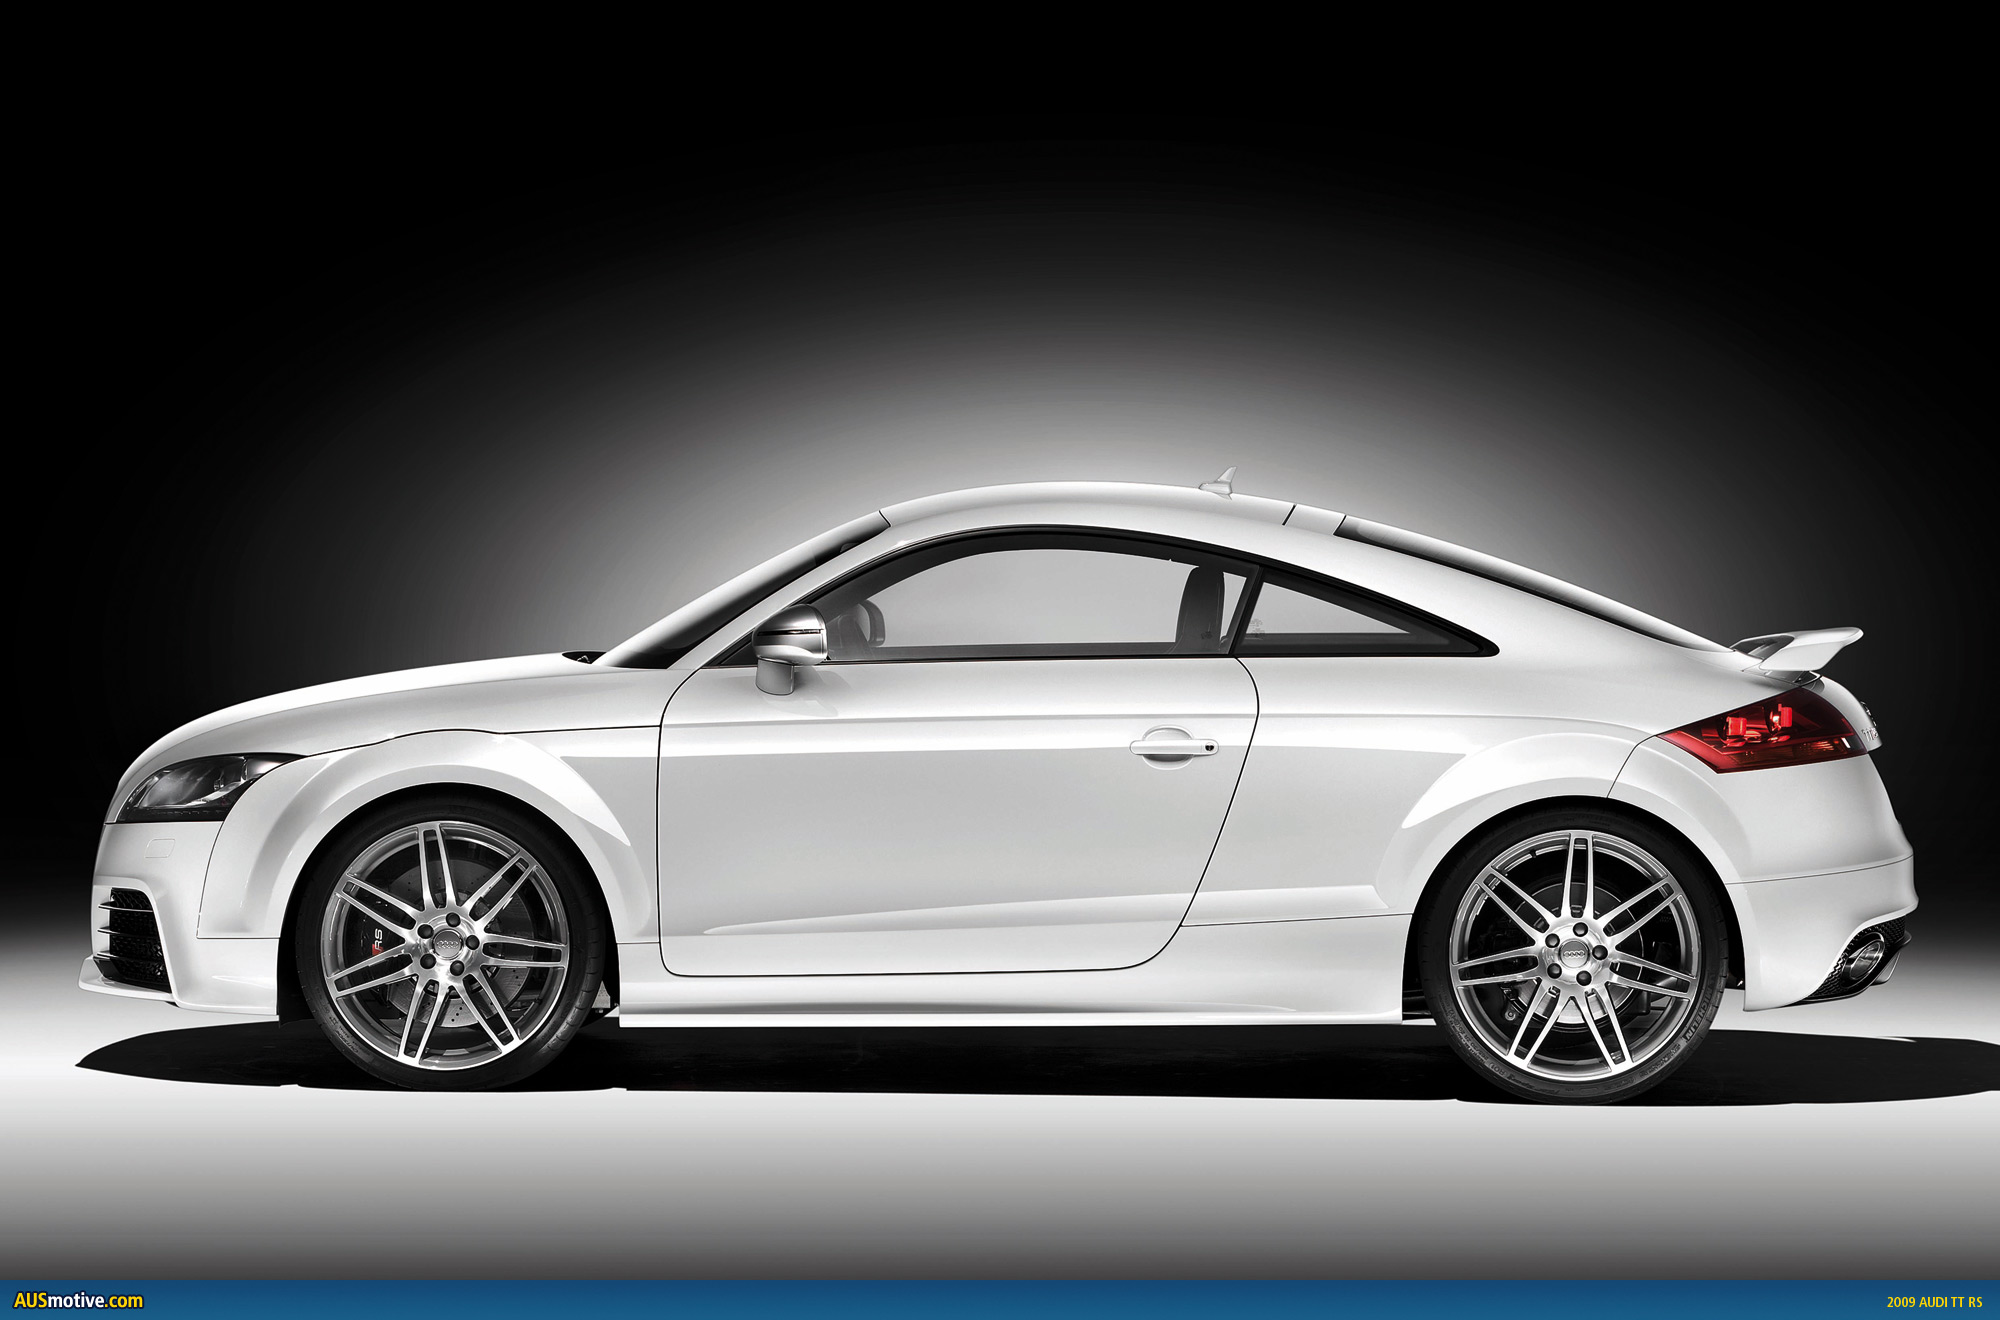 Audi-TT-RS-23.jpg